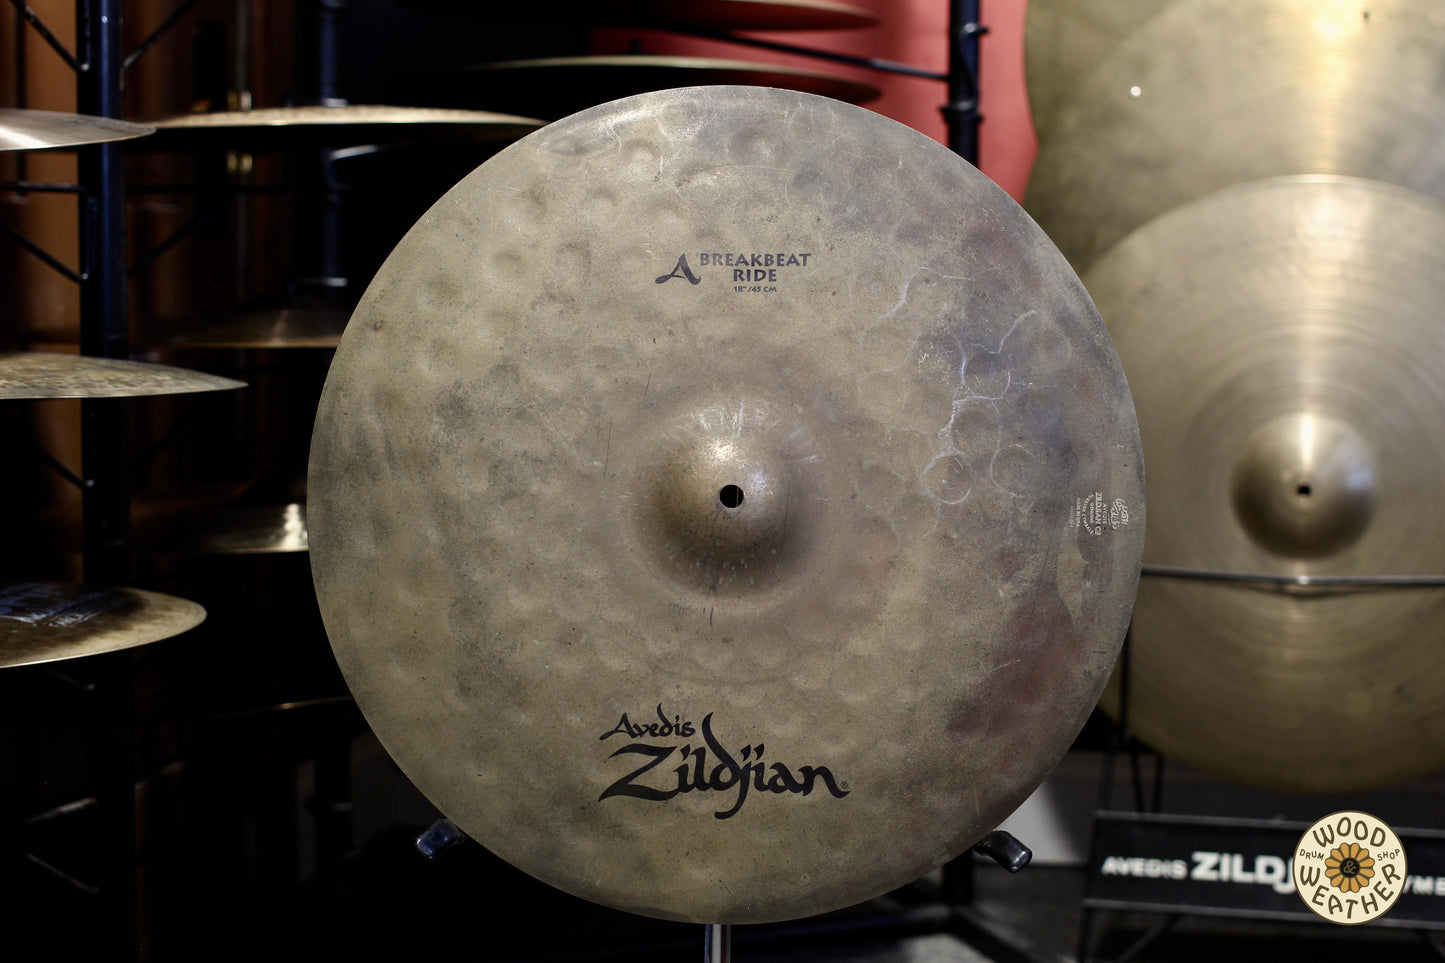 2006 Zildjian 18" Avedis Breakbeat Ride Cymbal 1555g